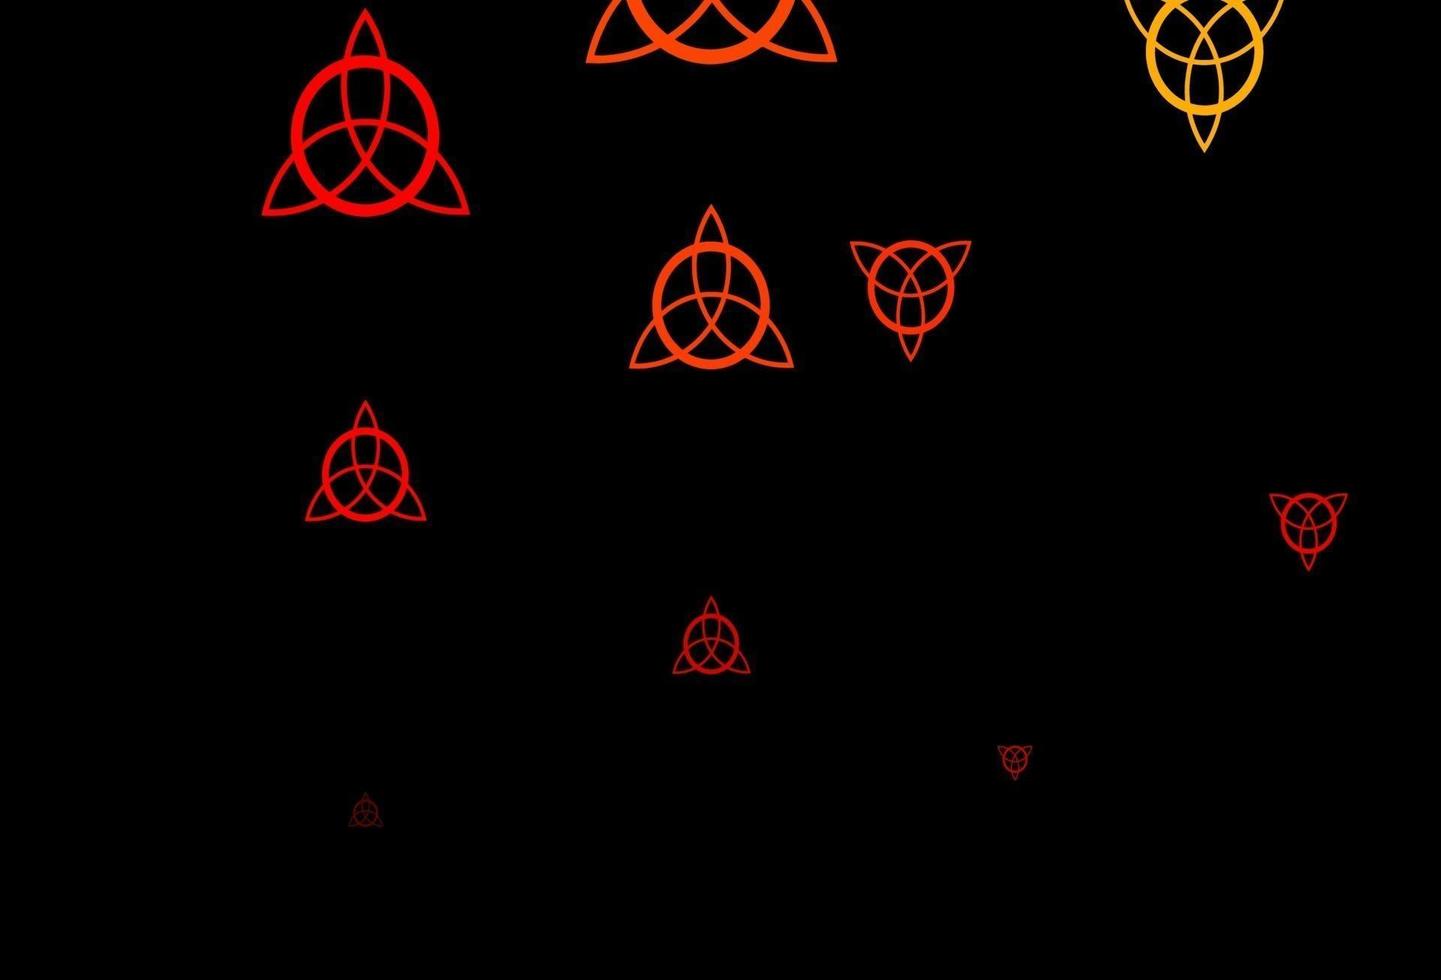 pano de fundo vector vermelho escuro com símbolos de mistério.